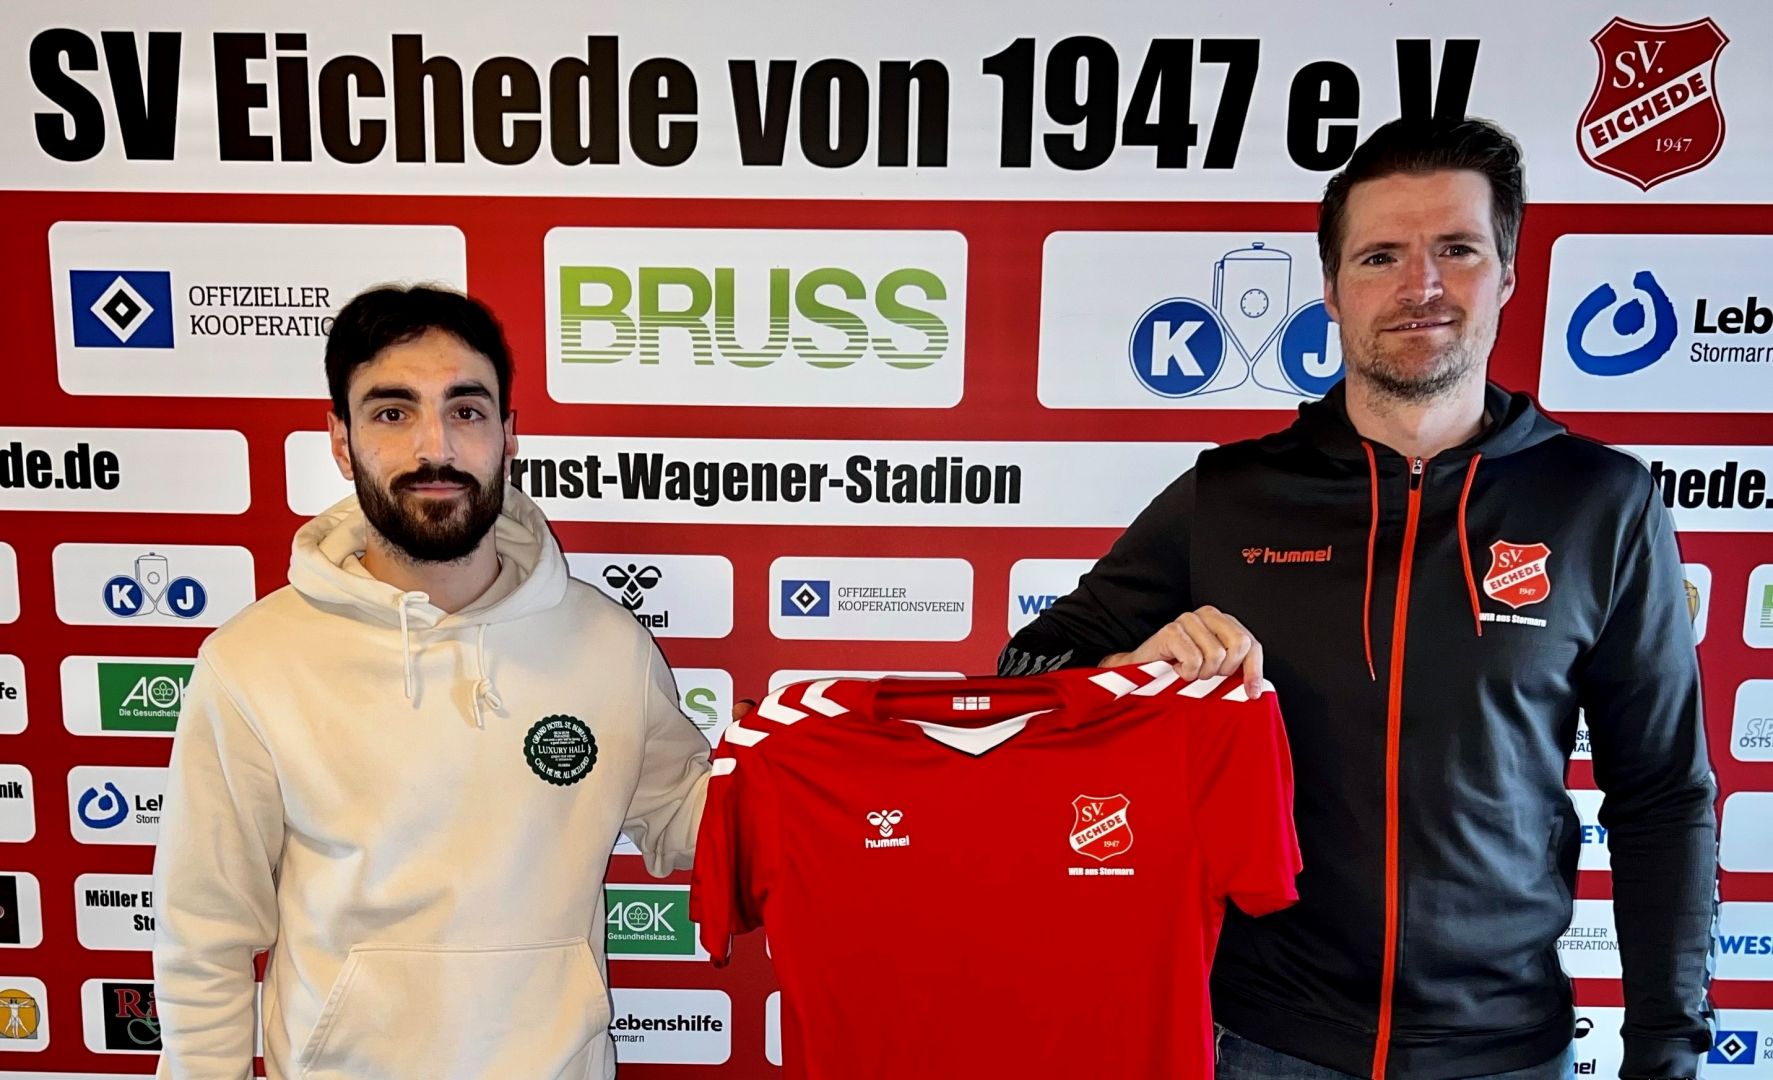 SV Eichede verpflichtet Arif Kilic